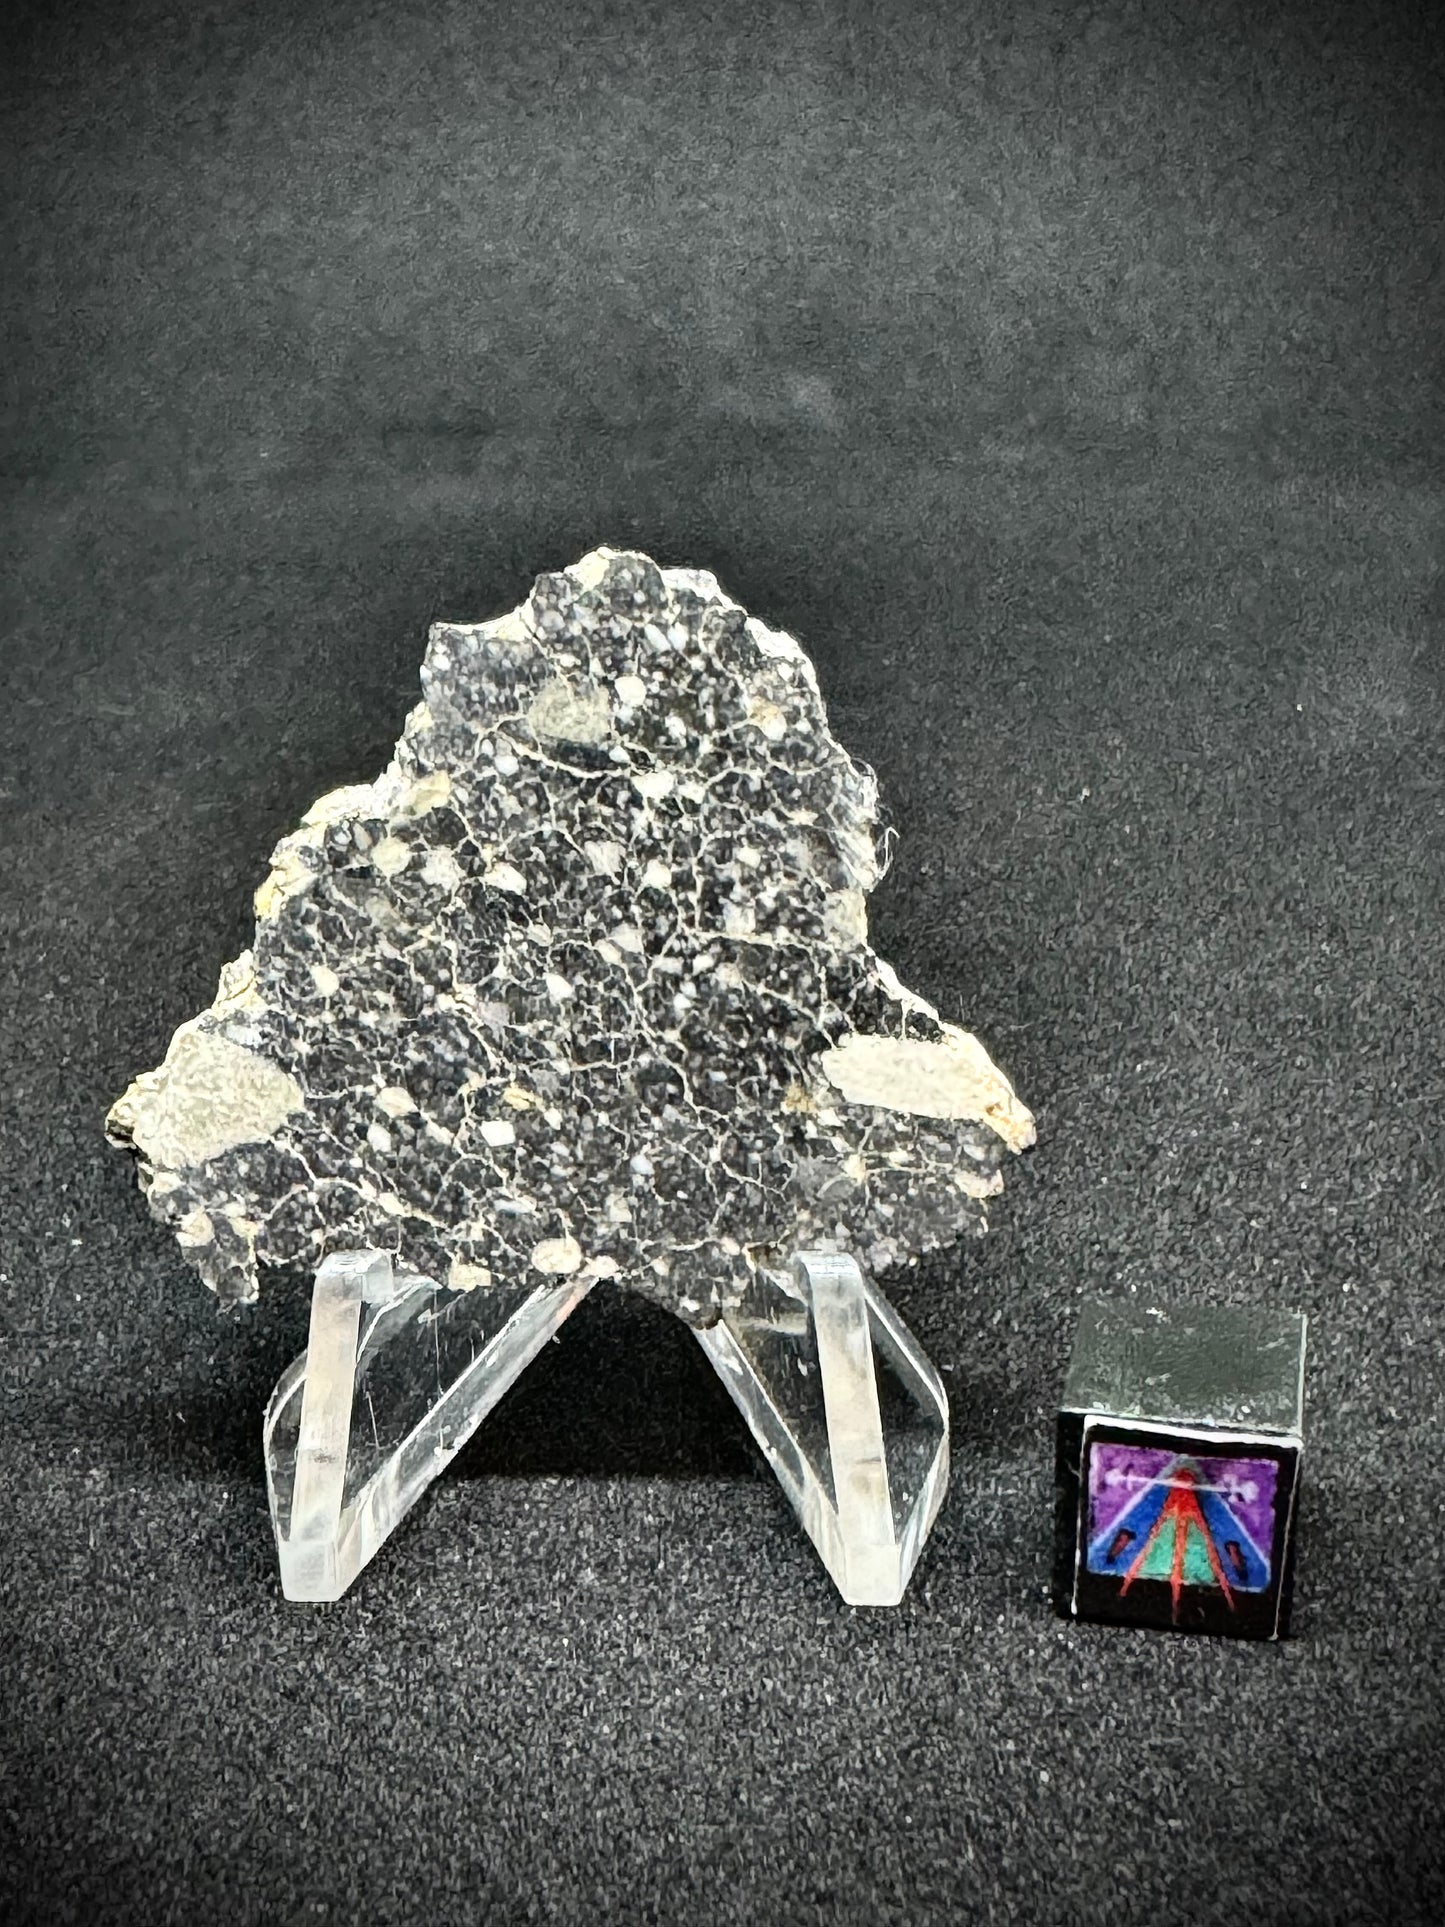 NWA 14685 Lunar Fragmental Breccia - Full Slice - 7.8g